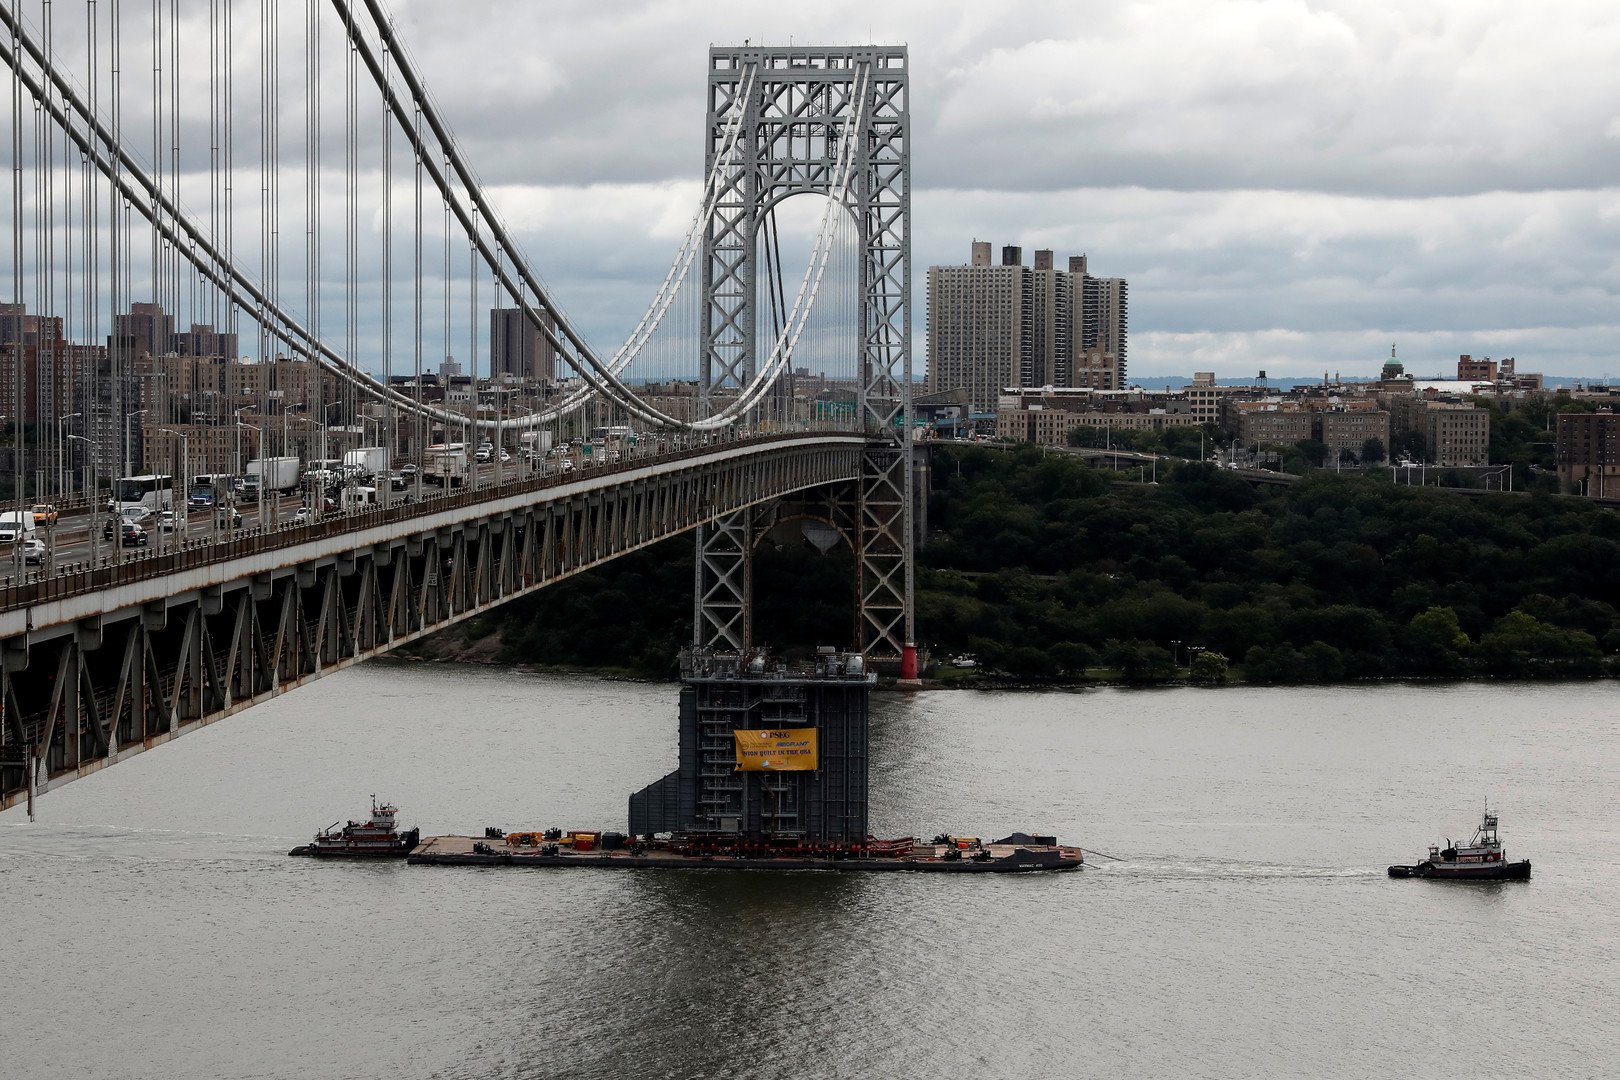 إغلاق جسر جورج واشنطن في نيويورك بسبب تهديد بوجود قنبلة